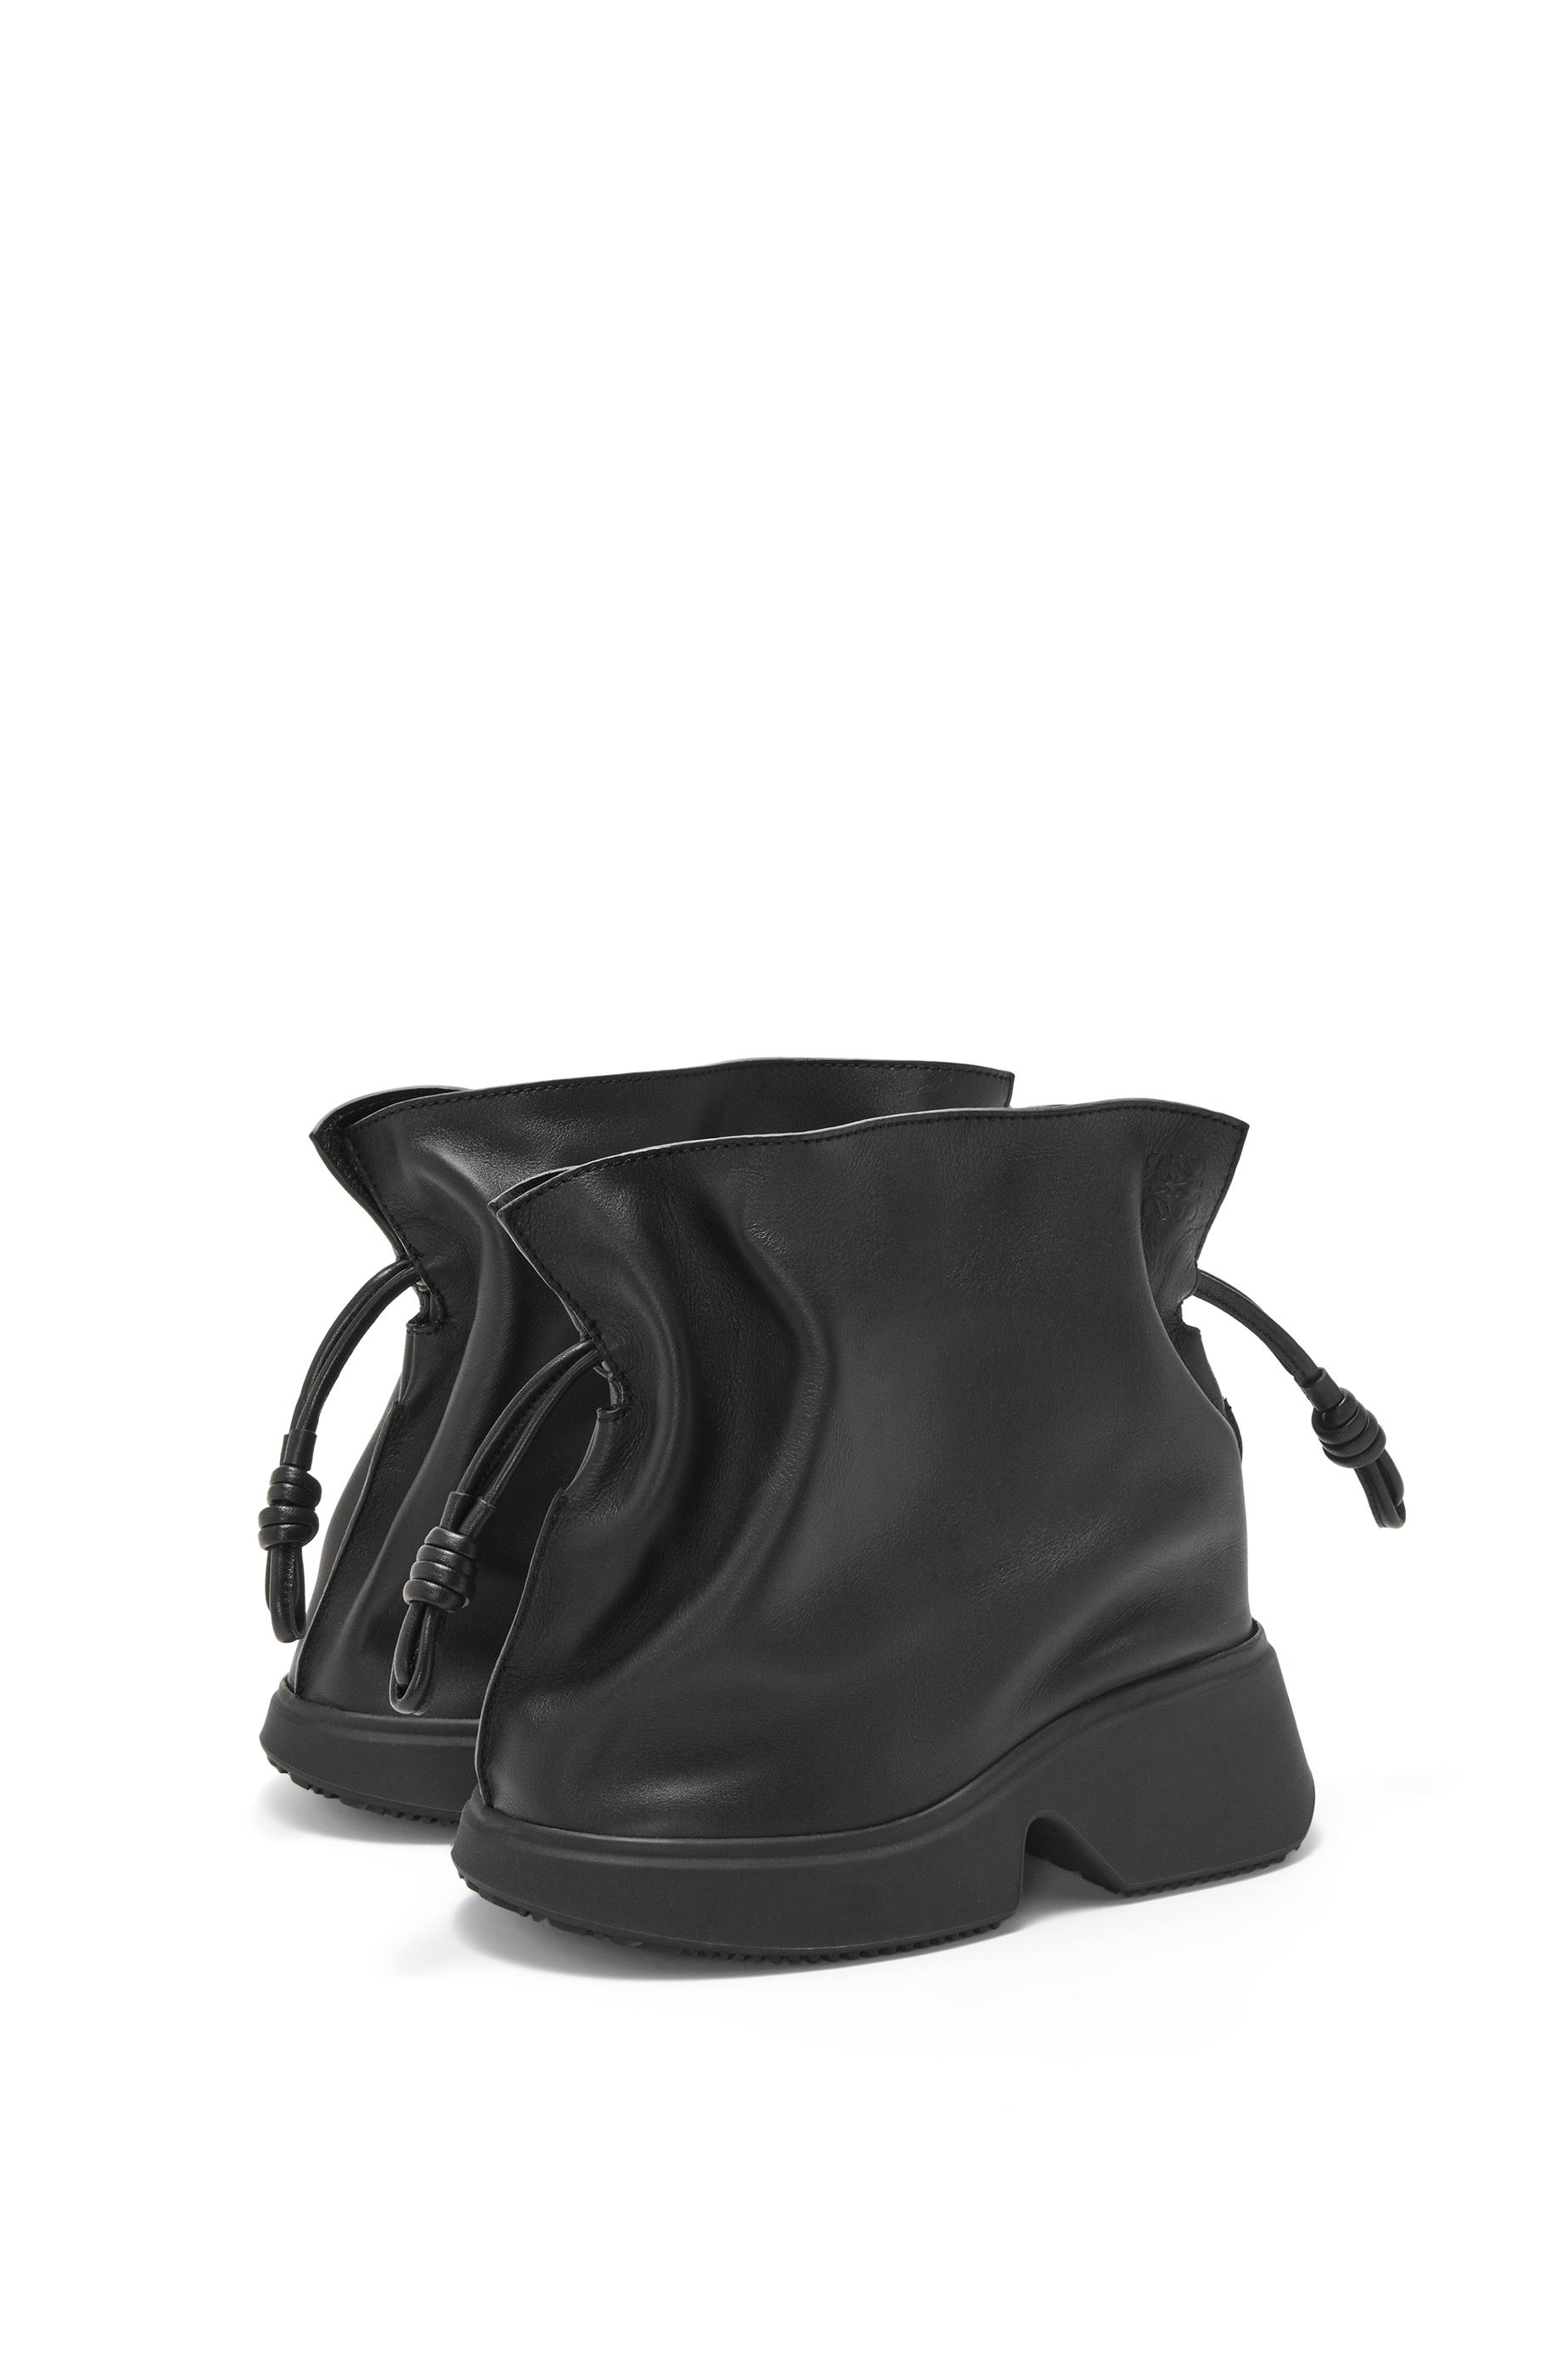 Loewe Flamenco Wedge Boot In Calfskin in Black | Lyst